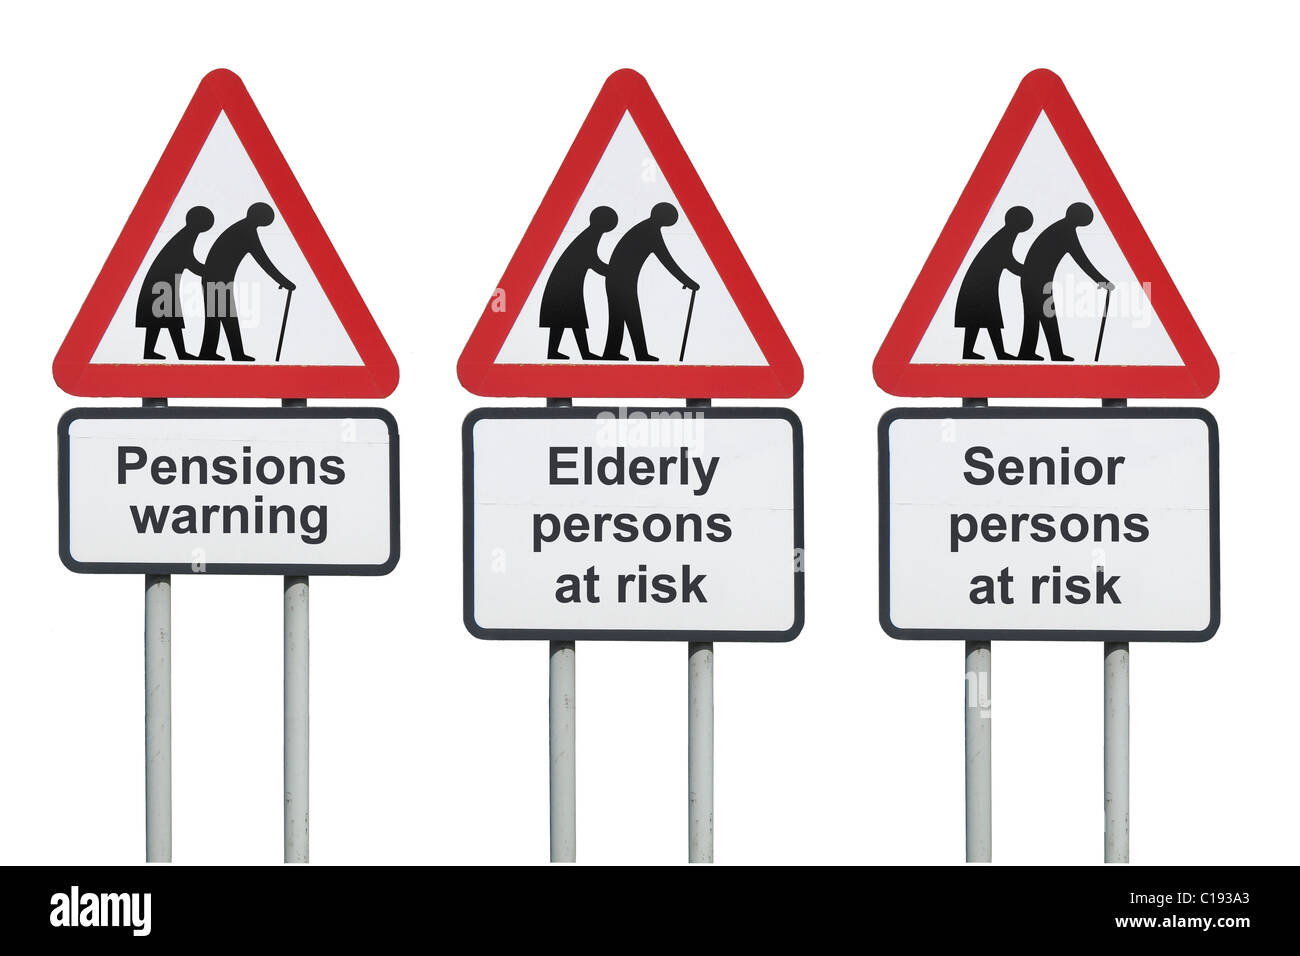 Pensioni di avvertimento, anziani o anziani a rischio cartello stradale Foto Stock